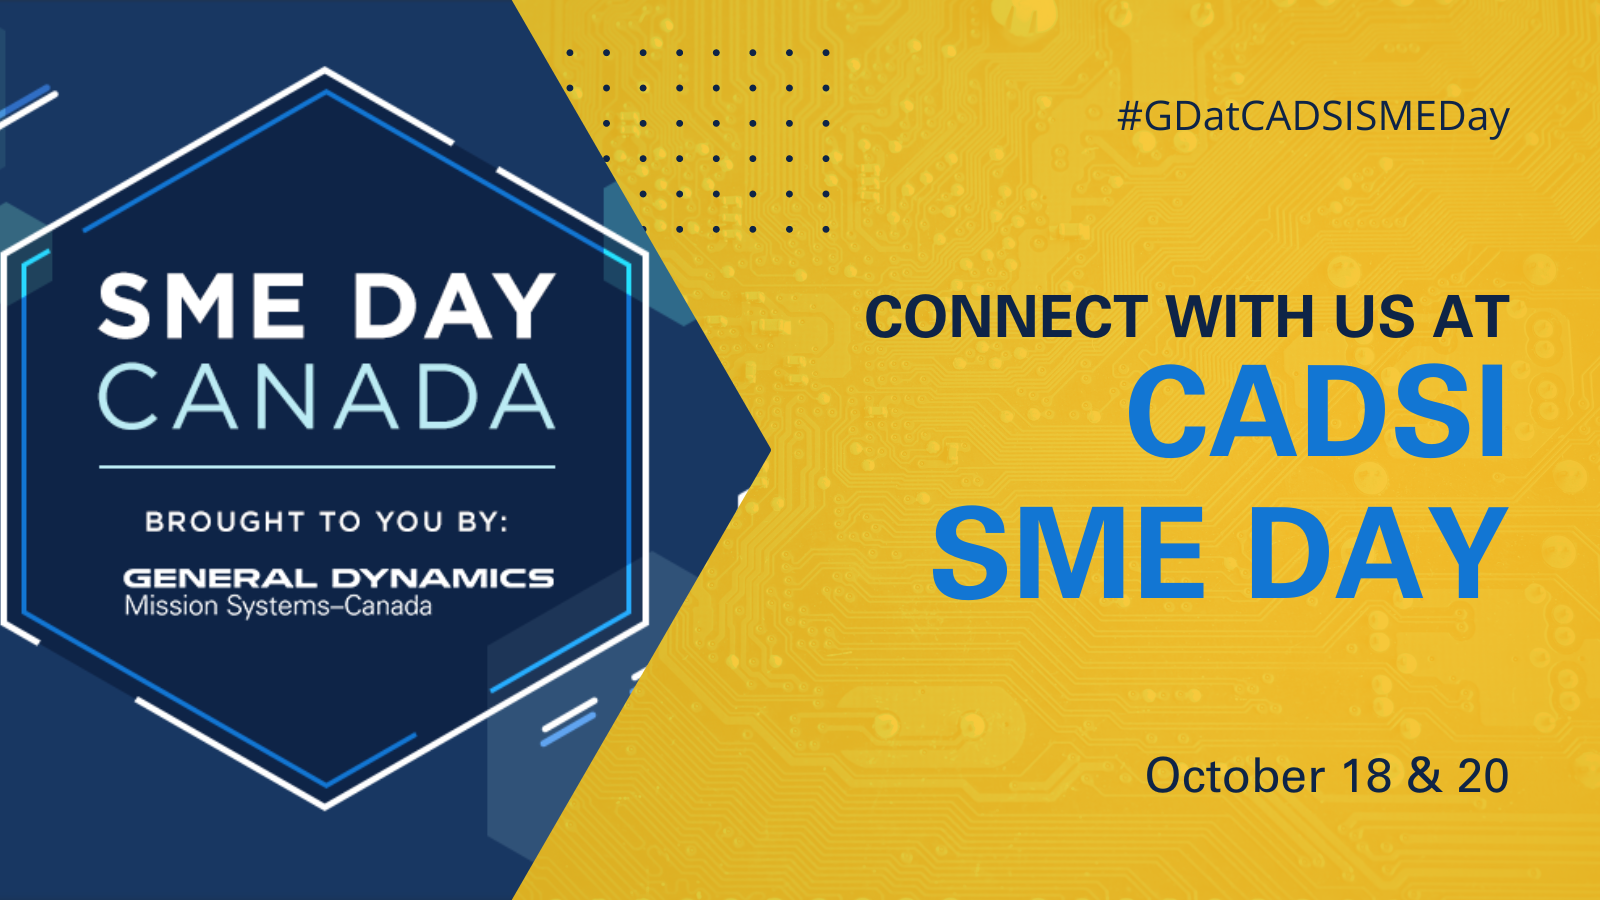 CADSI SME Day invite: October 18-20